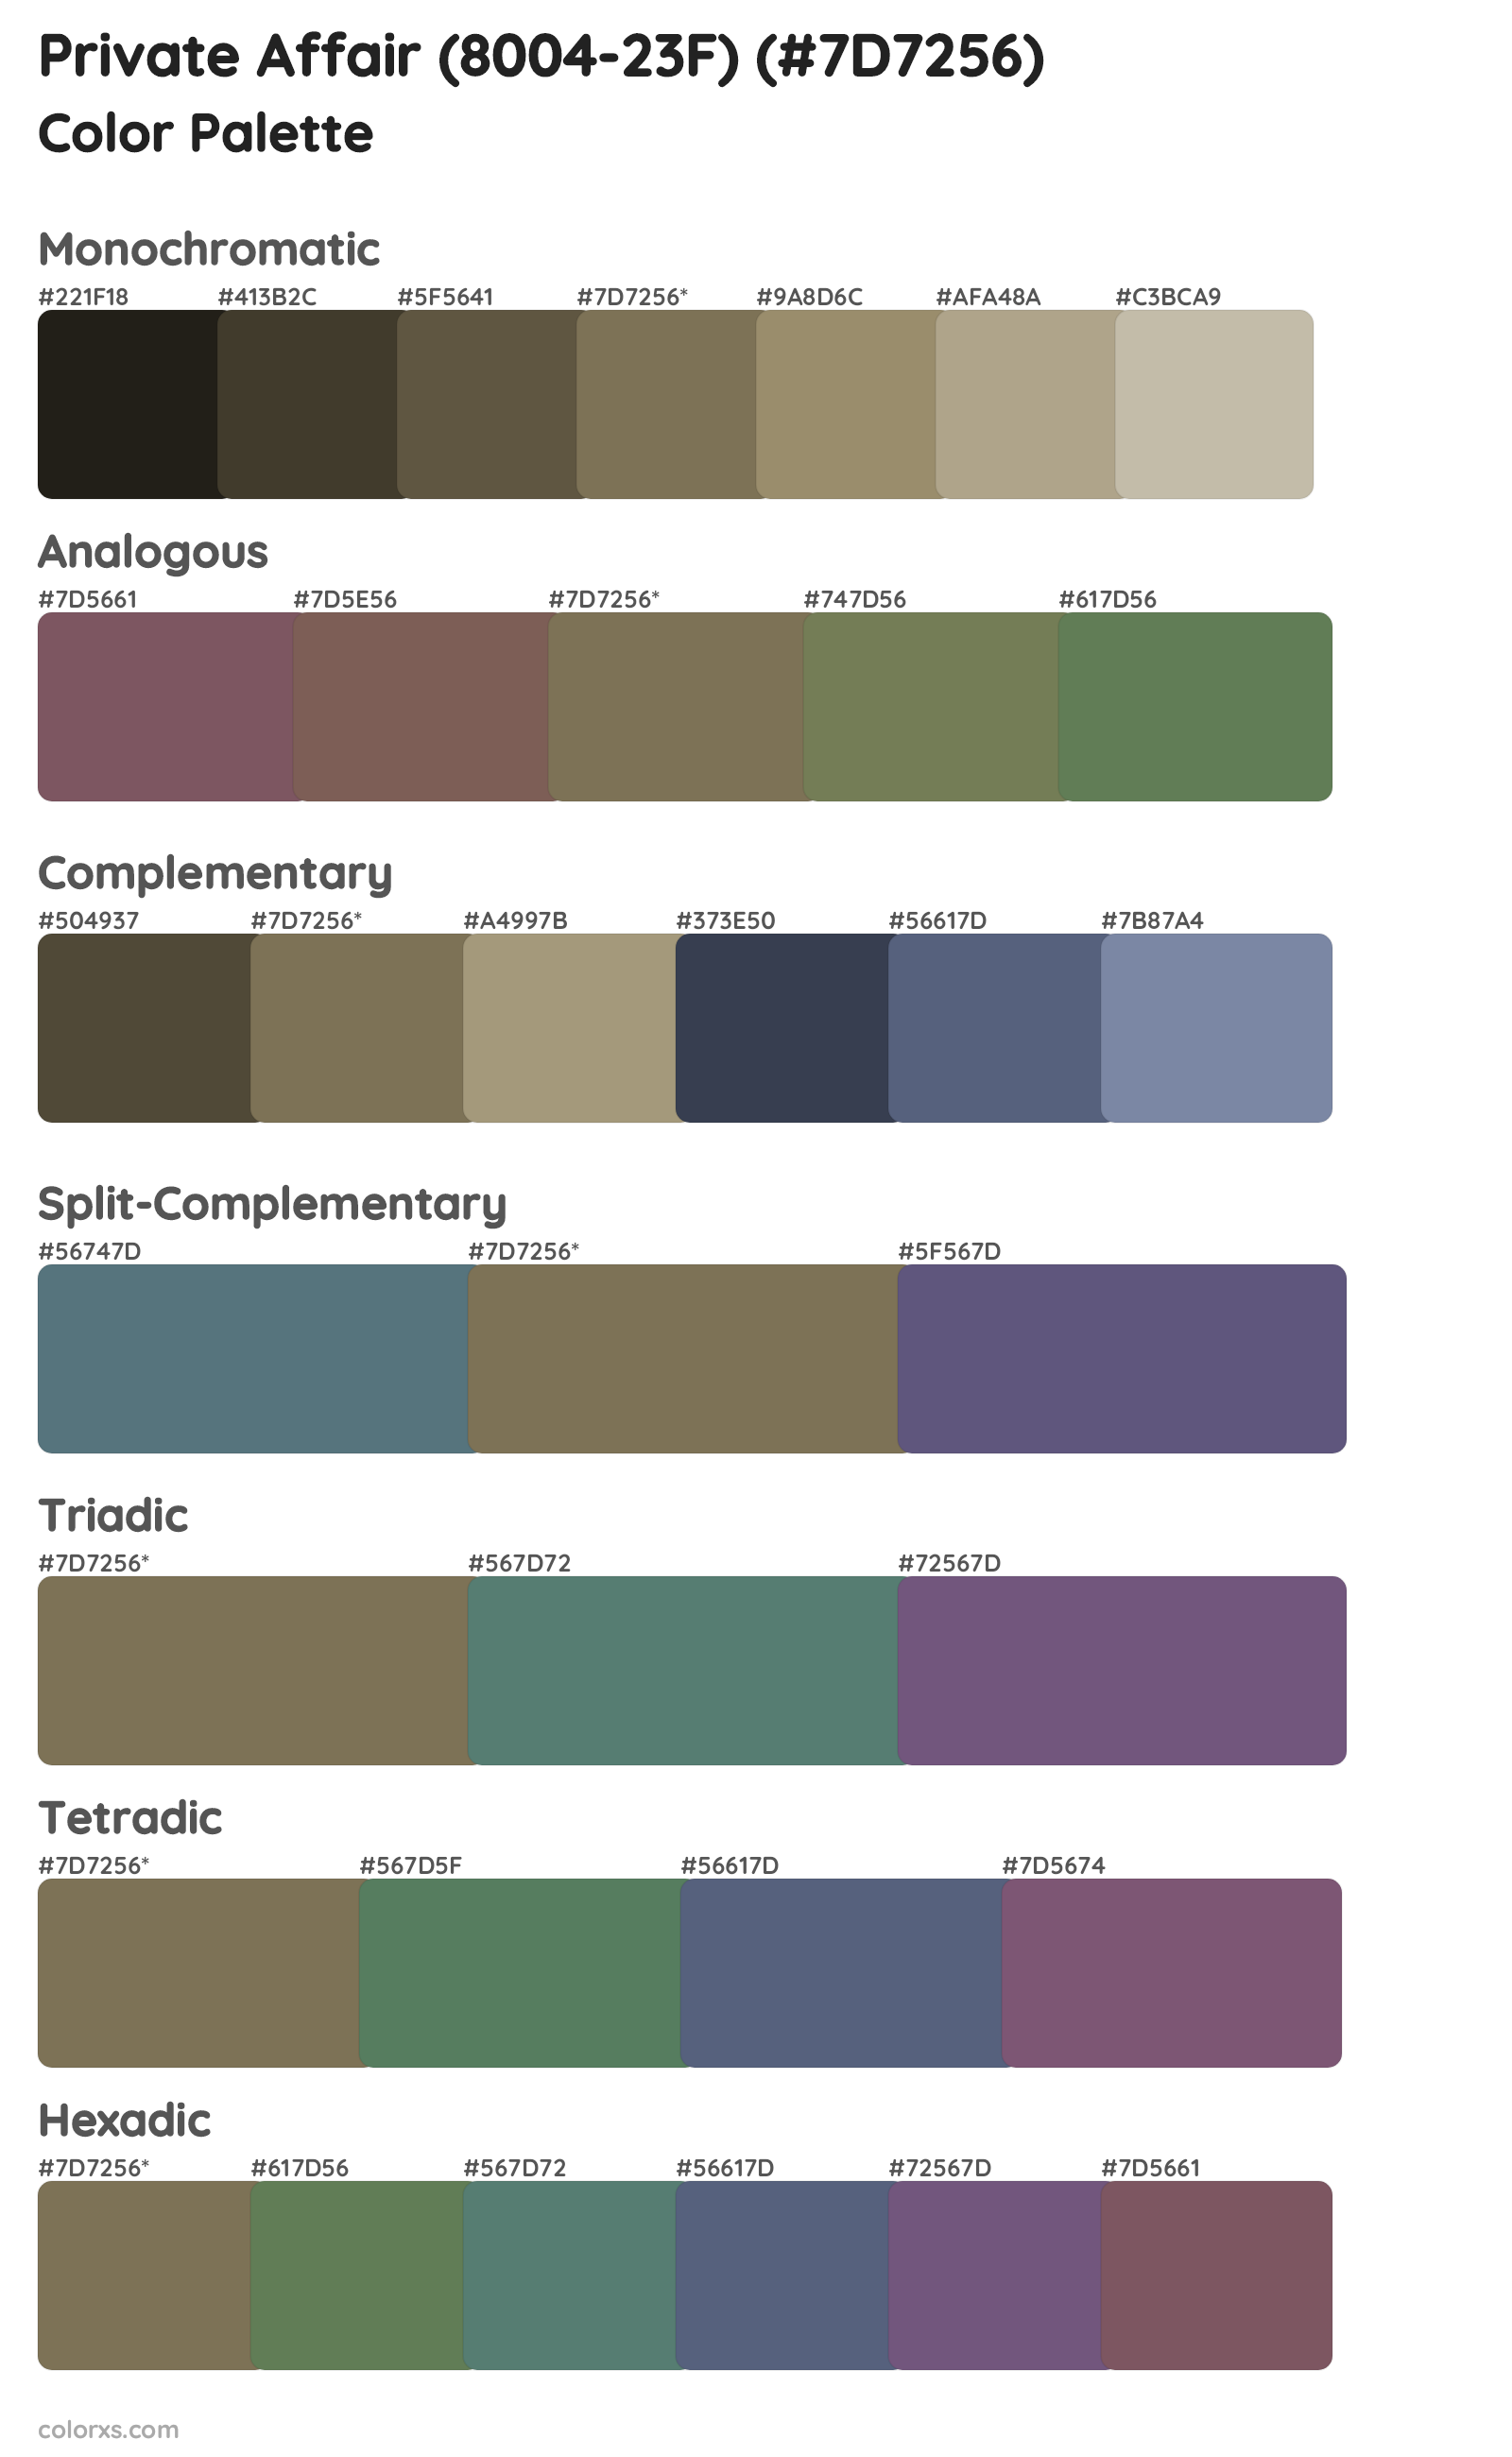 Private Affair (8004-23F) Color Scheme Palettes